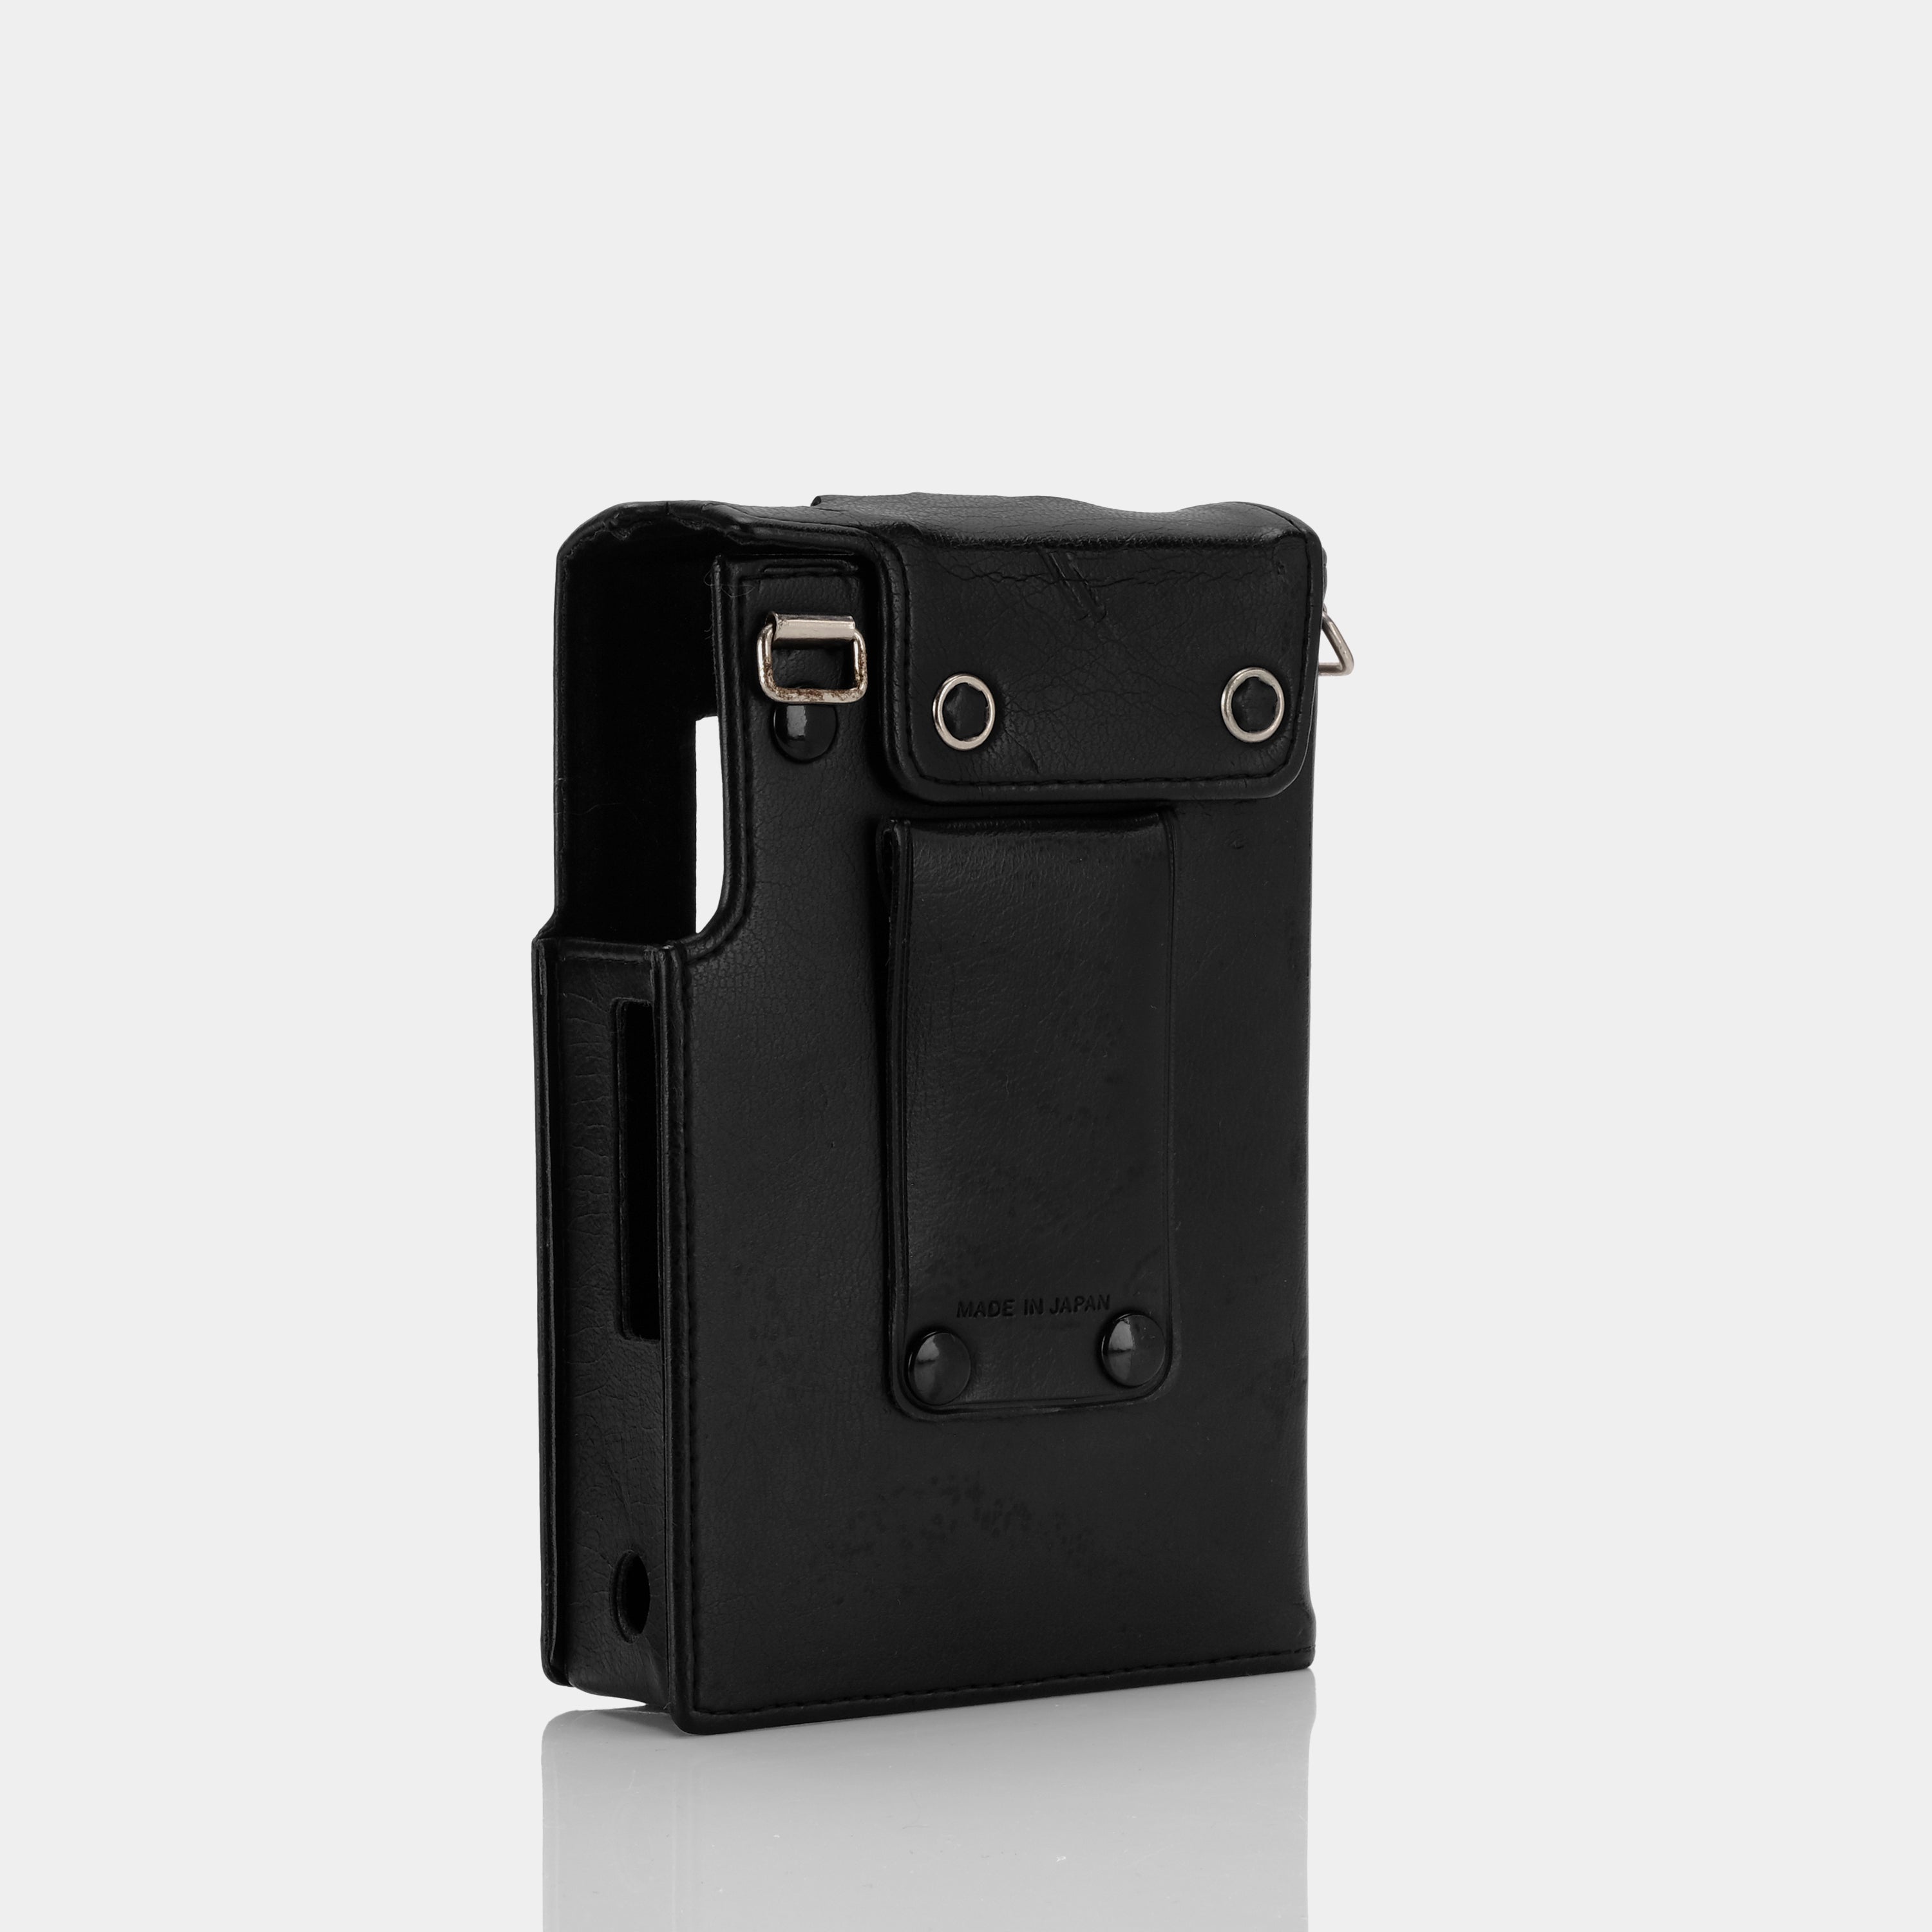 TPS-L2 Black Leather Portable Cassette Player Case